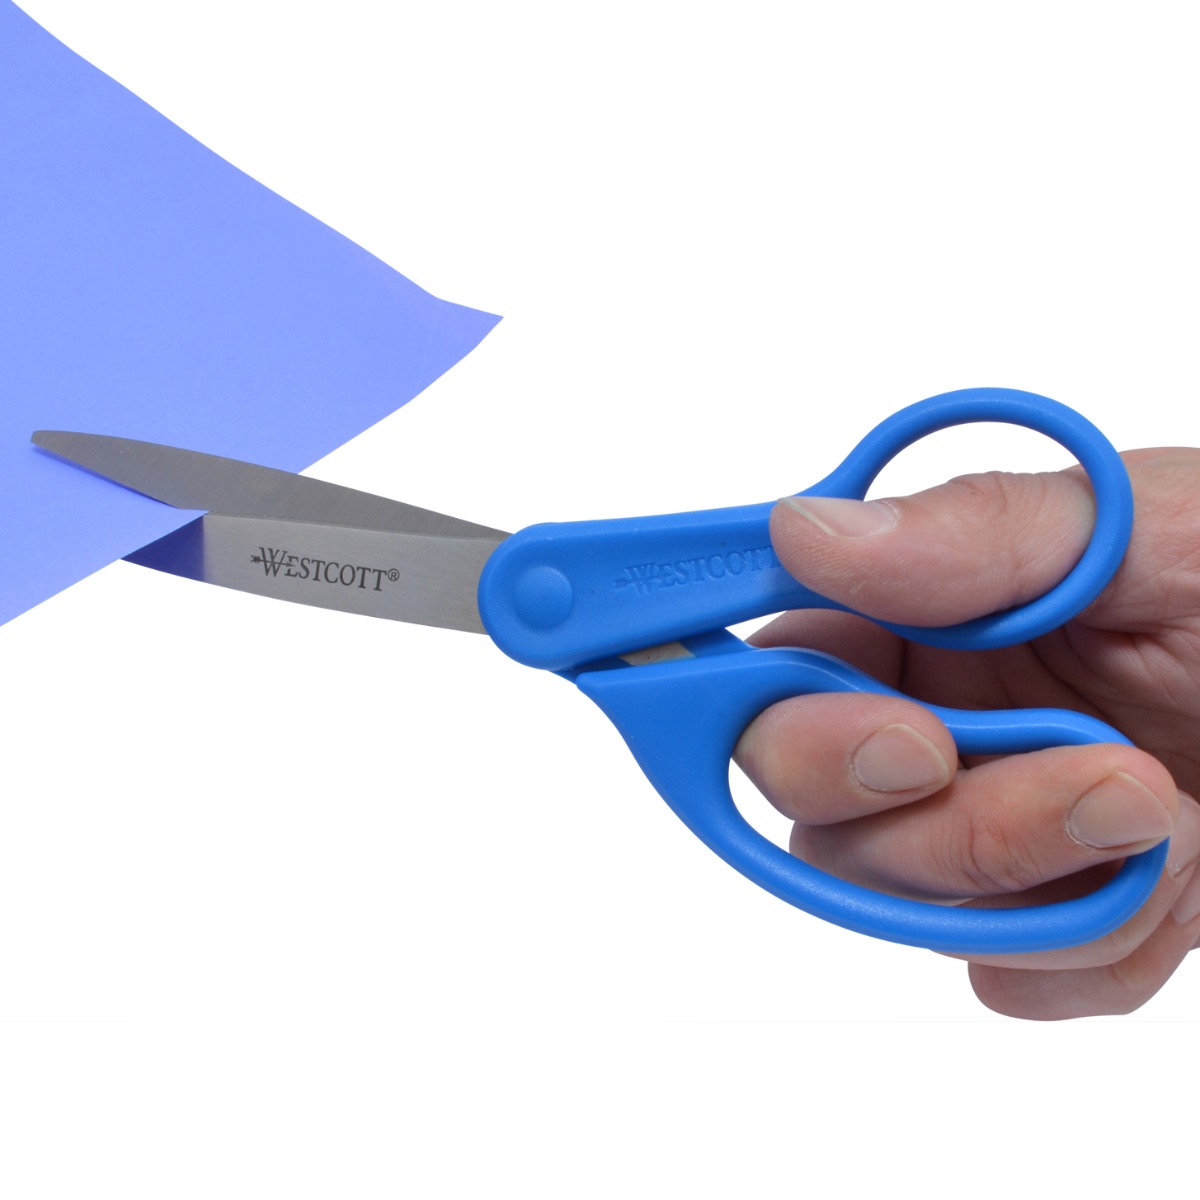 Westcott® Hobby Knife Paper Trimmer, 8 1/2, Black/Blue